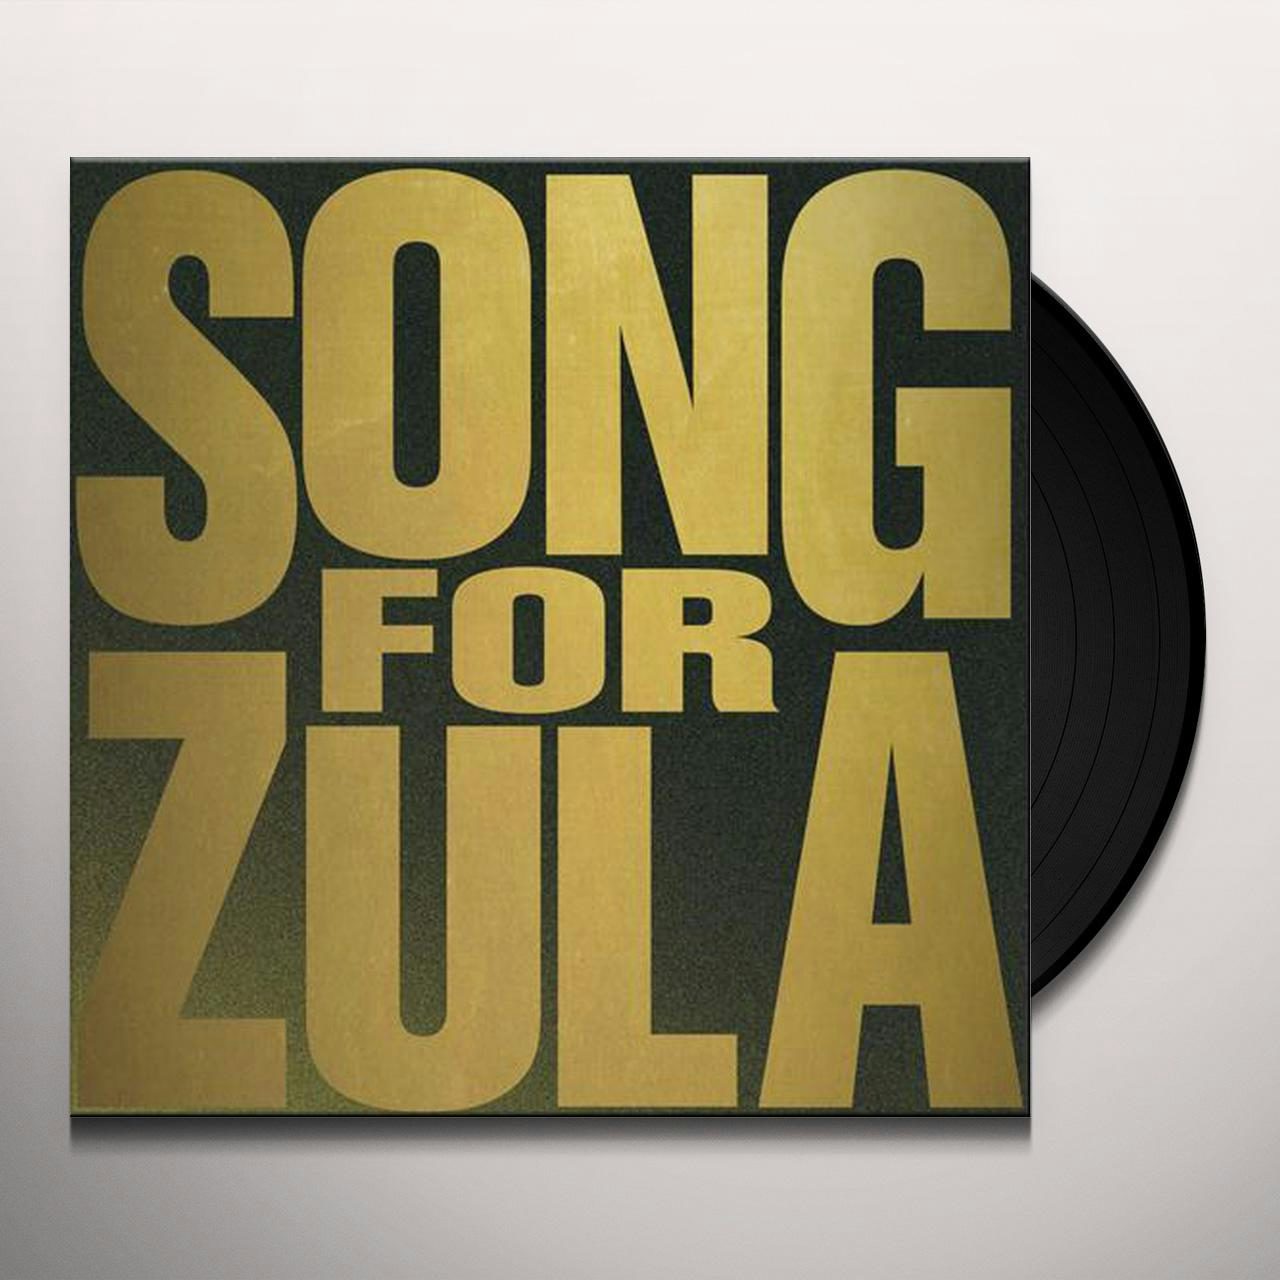 song of zula